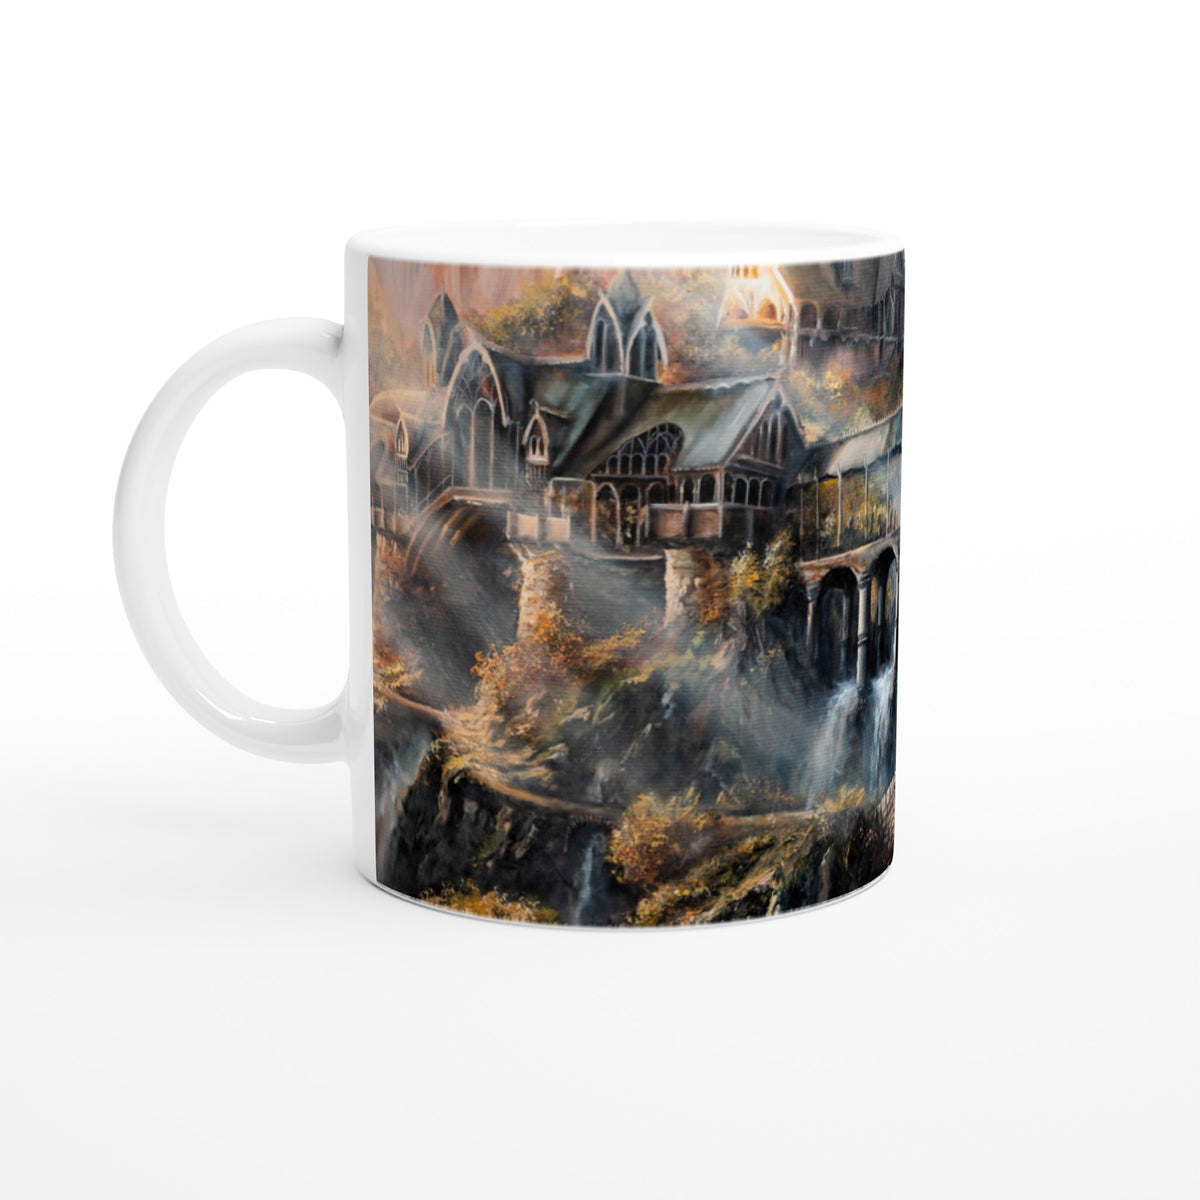 "The Fellowship" Mug